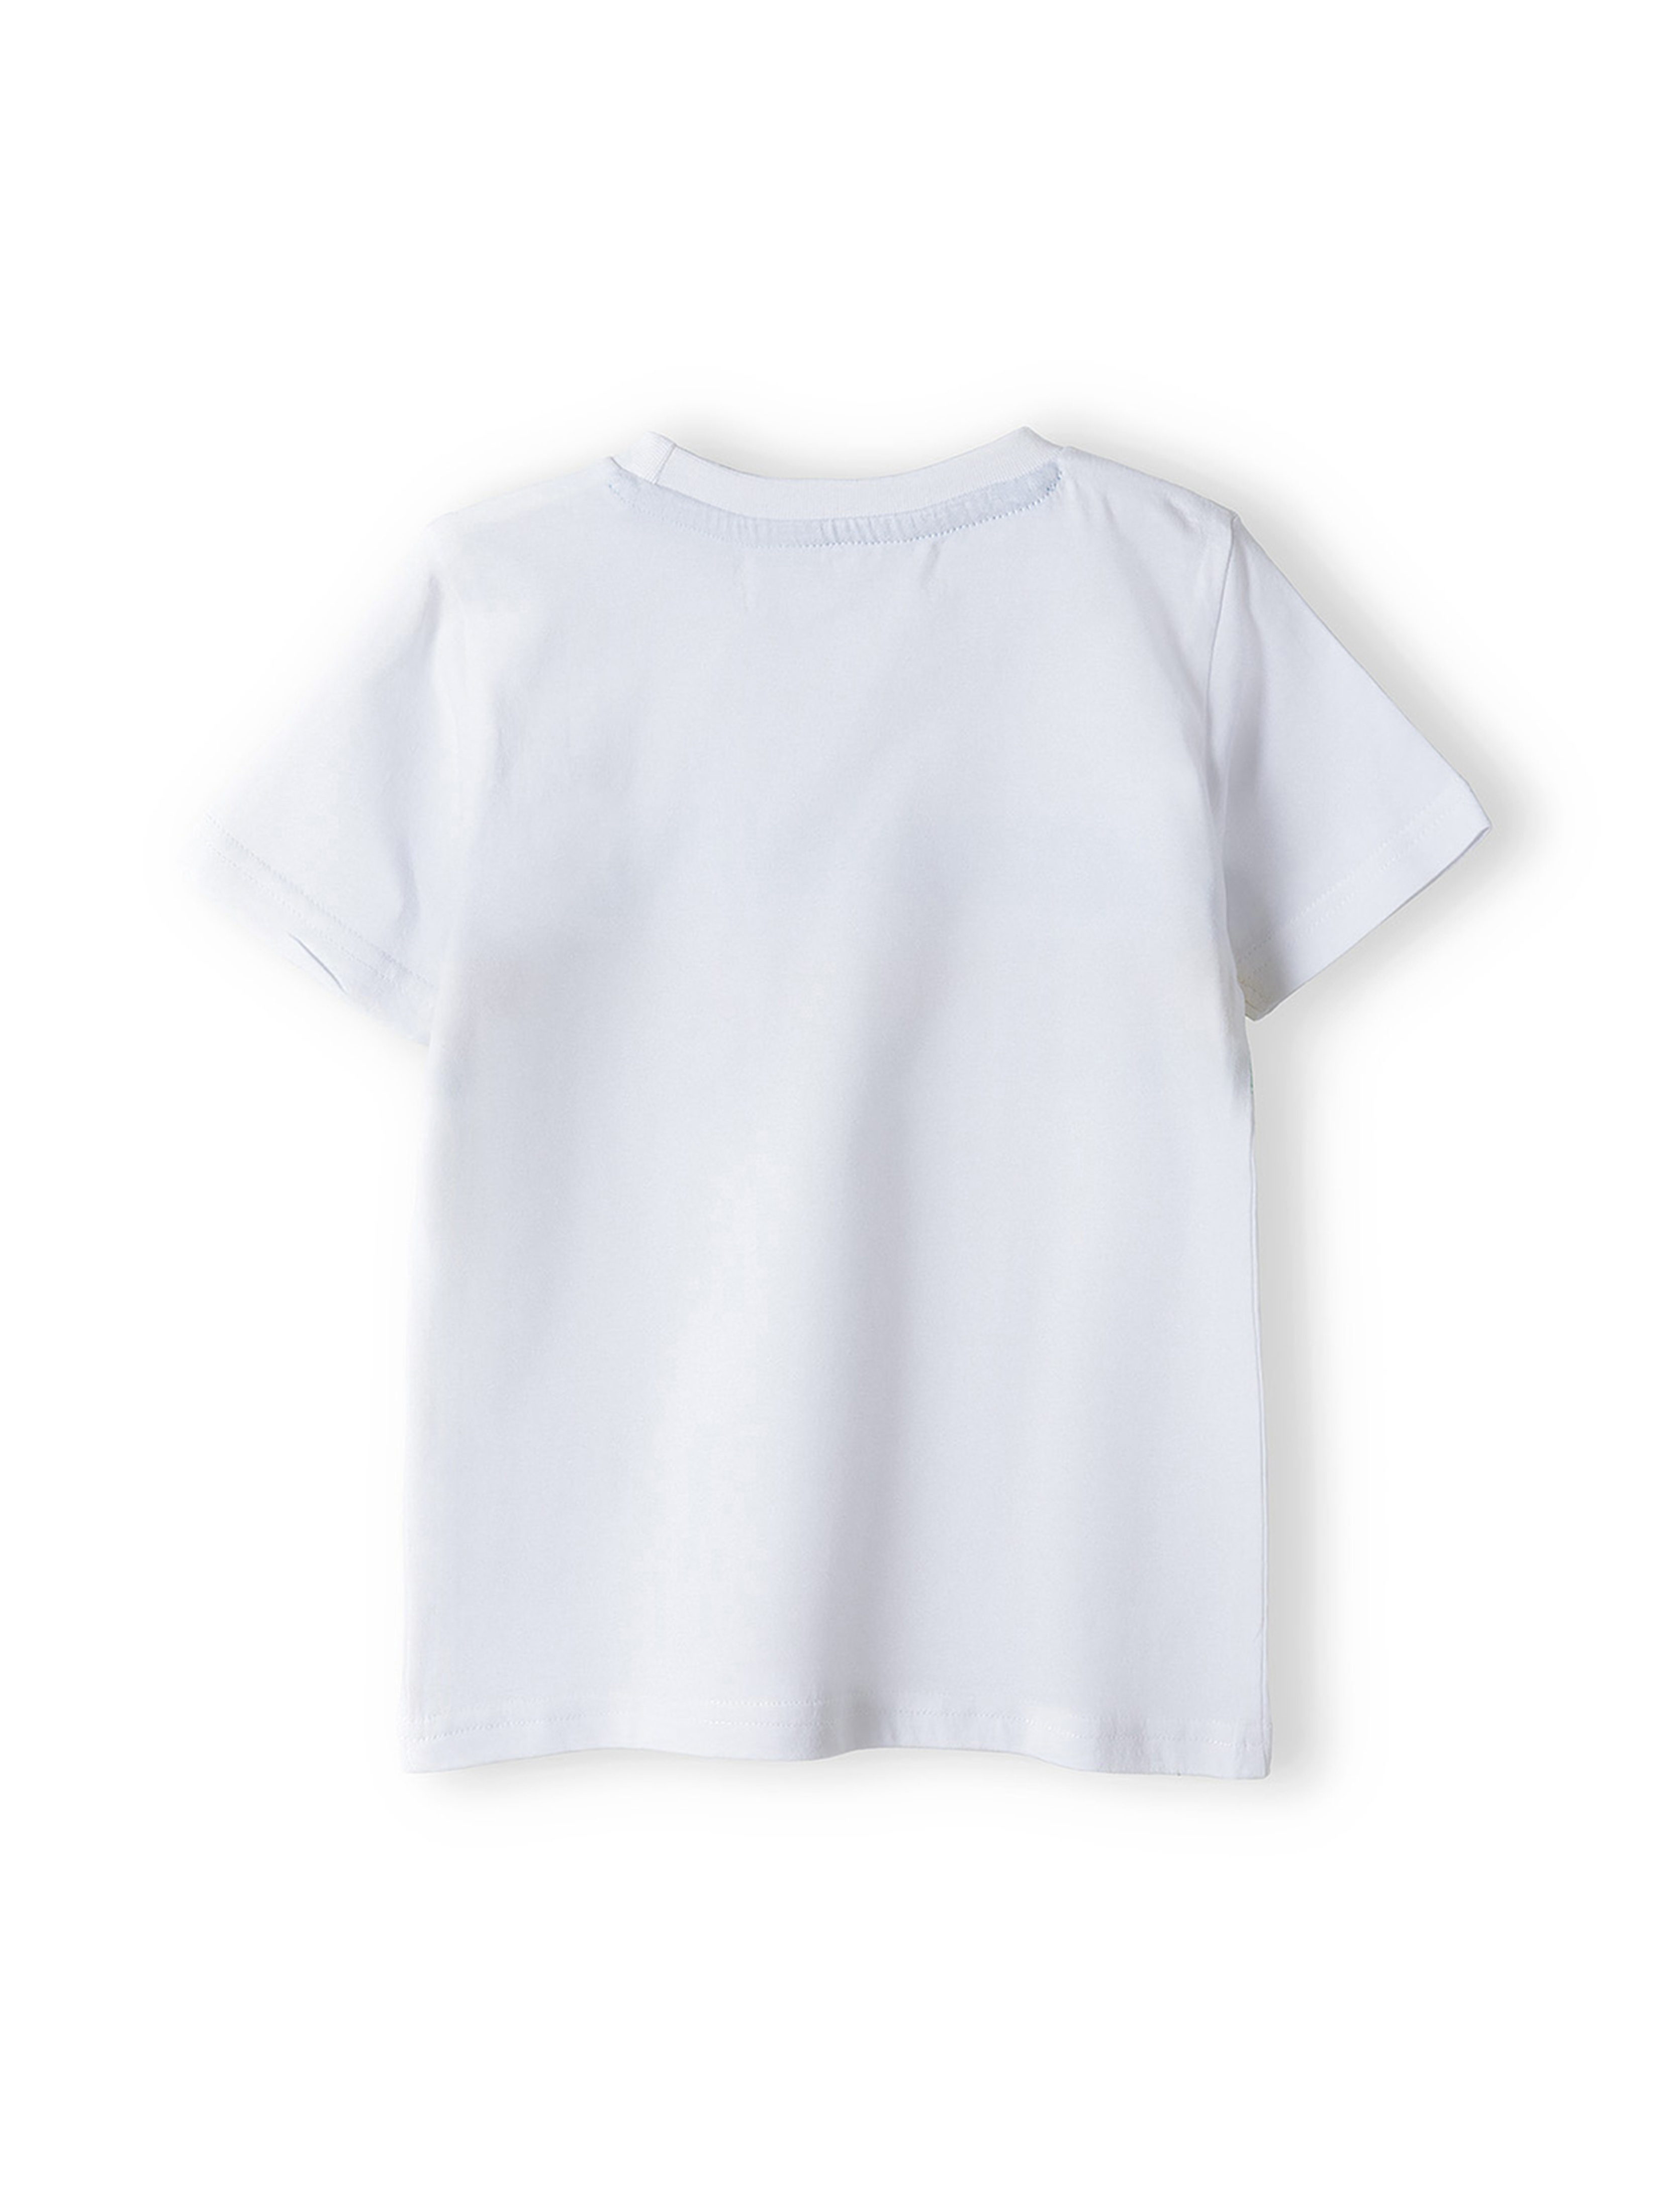 Biały t-shirt dla chłopca z bawełny z nadrukiem